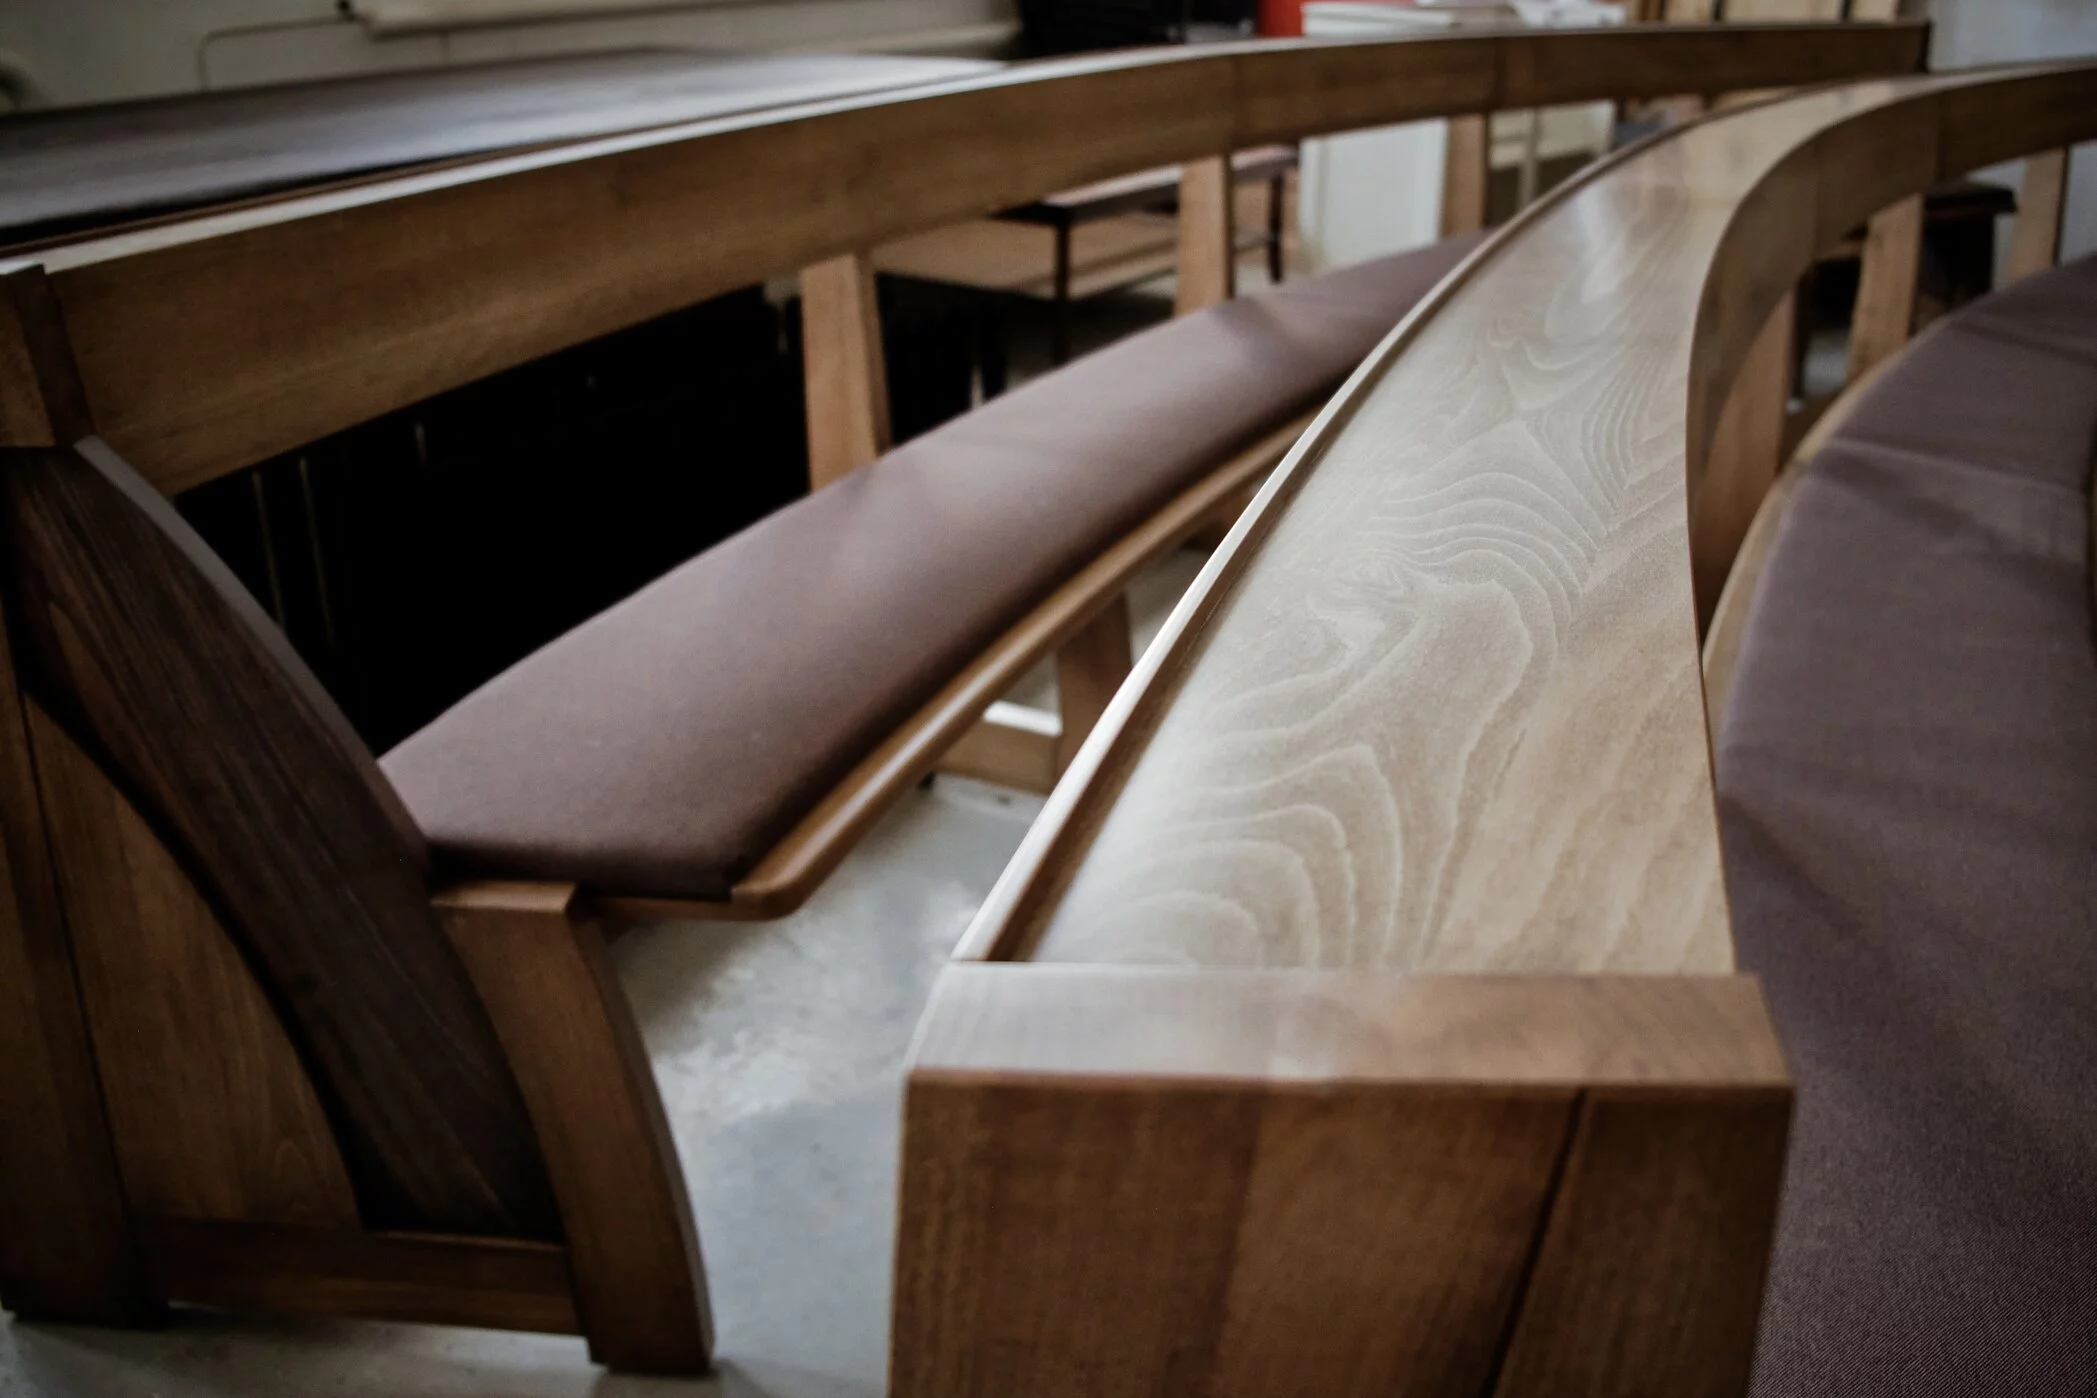 O design minimalista do banco da igreja de Zoe combina funcionalidade e qualidade. Vista do banco acabado com uma almofada de assento